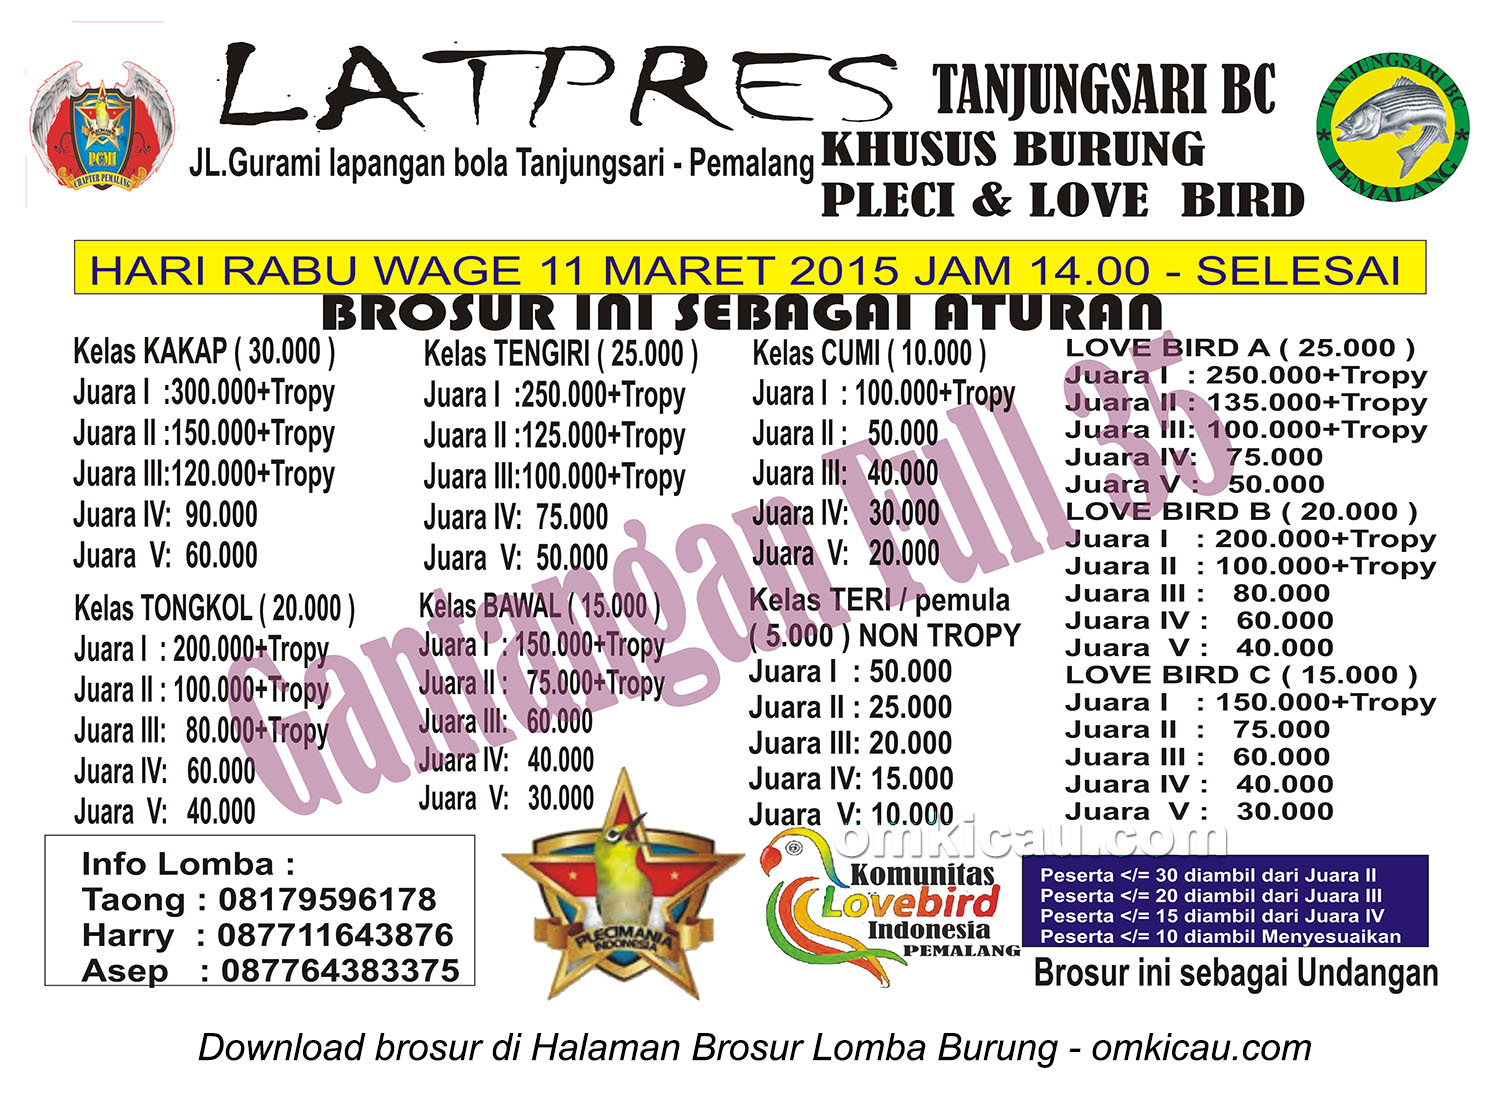 Brosur Latpres Burung Pleci dan Lovebird Tanjungsari BC, Pemalang, 11 Maret 2015